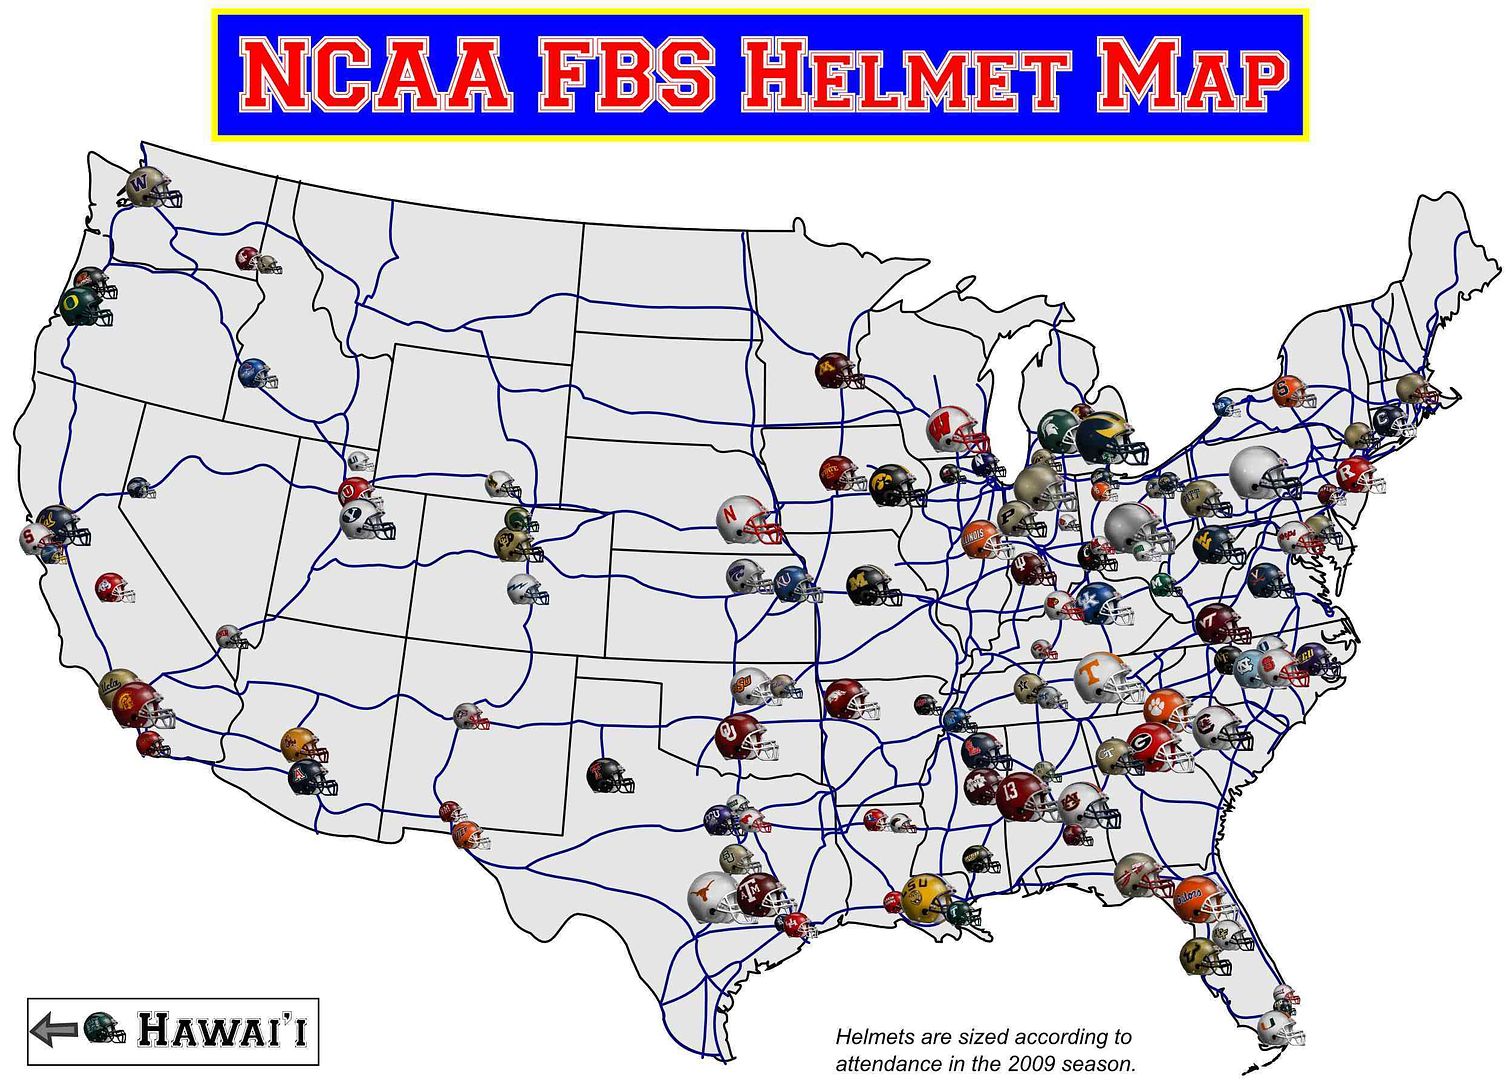 Helmet Maps :: NCAA FBS Helmet Map picture by Bluma_96 - Photobucket